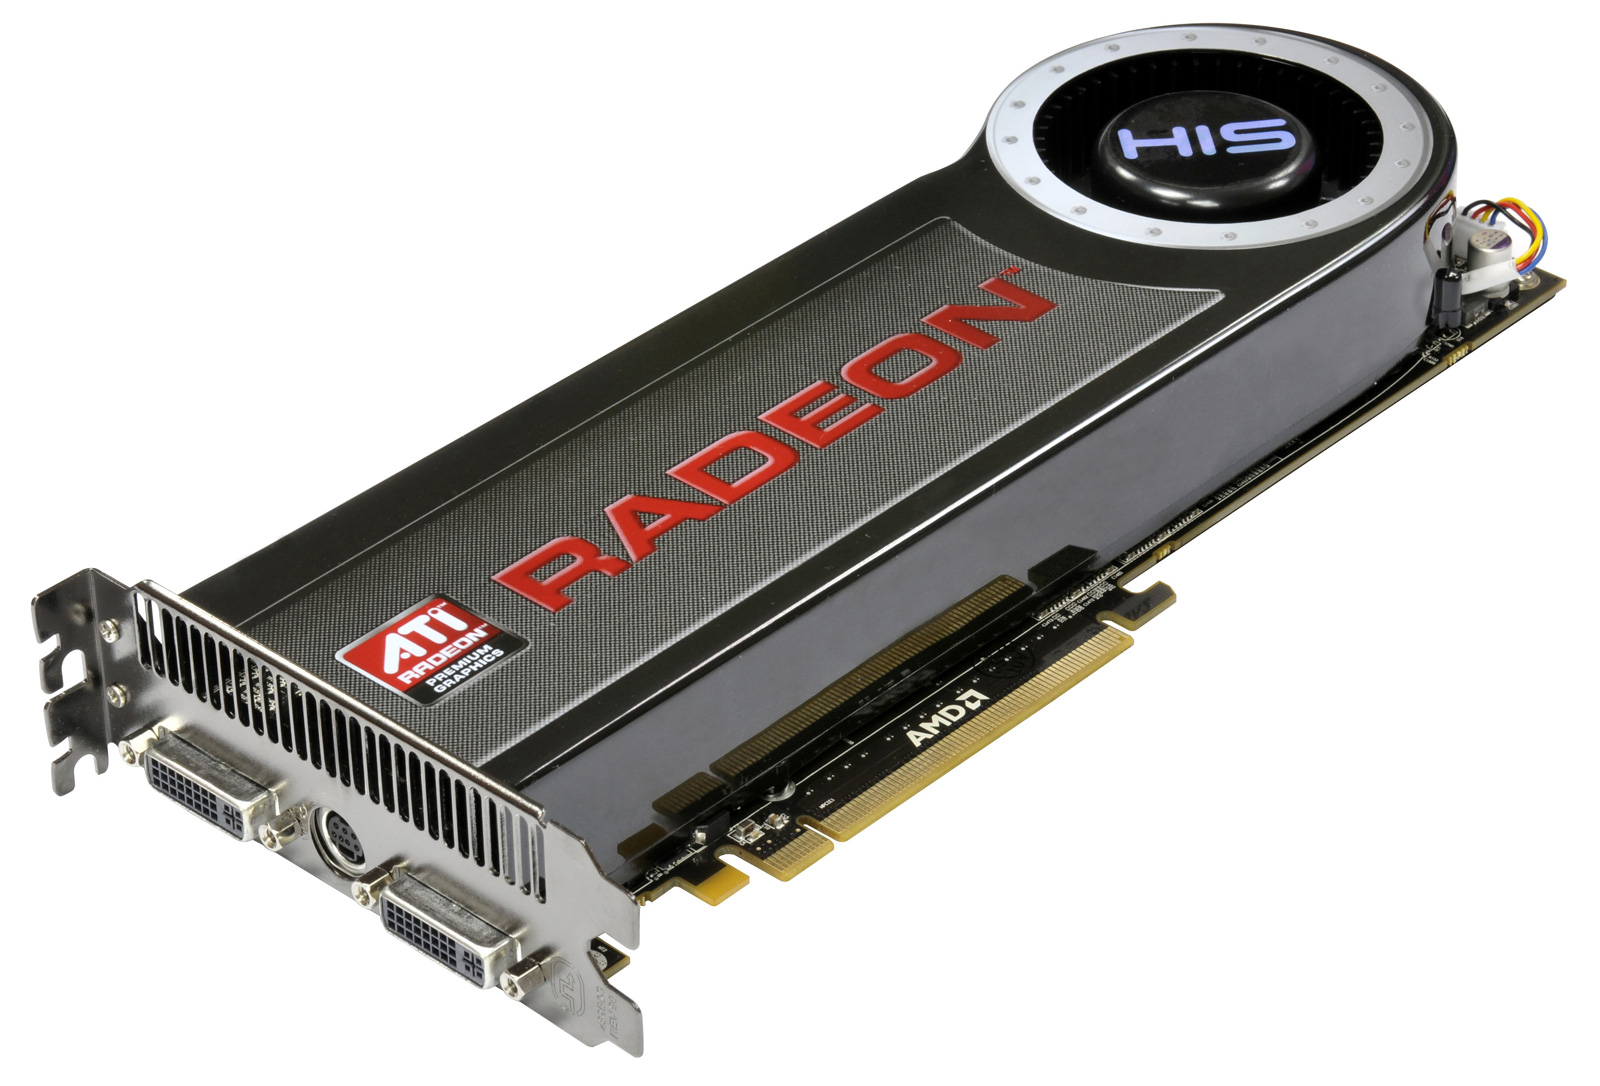 ATI ATI Radeon HD 4870 X2 Scheda Grafica 2GB DDR5 